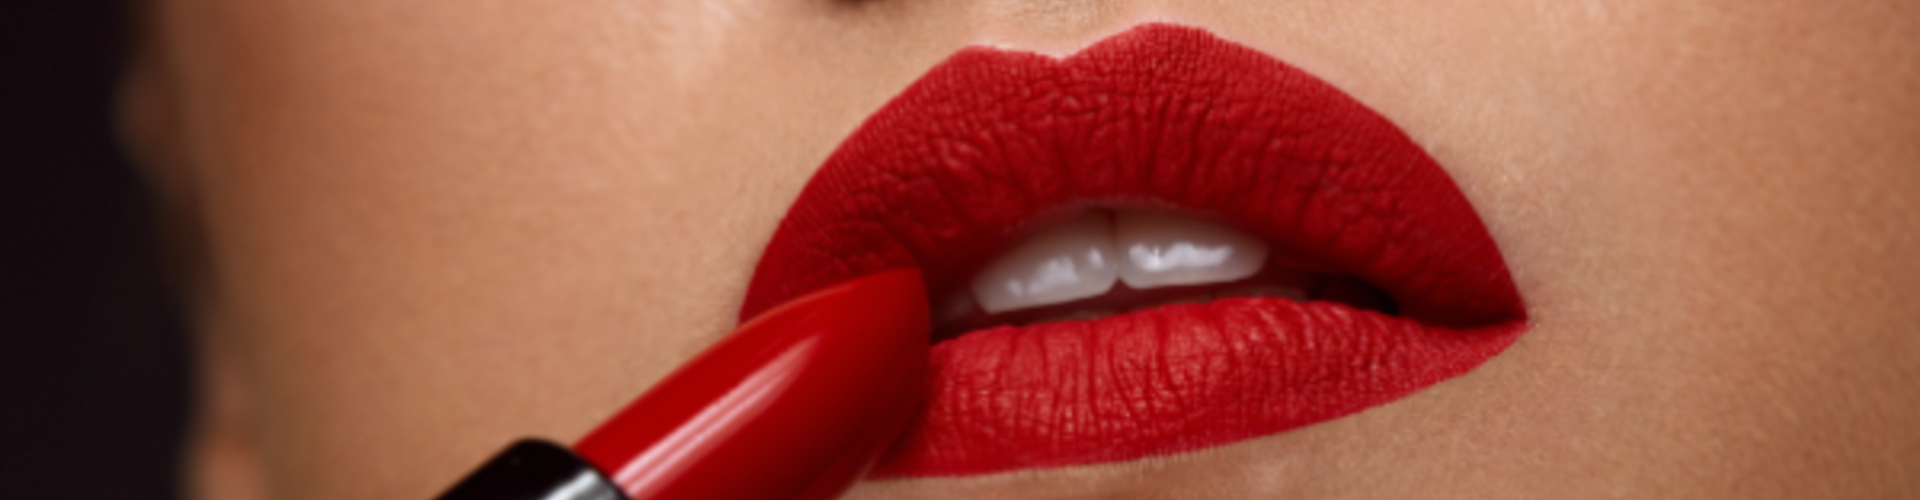 Questions sur le rouge à lèvres